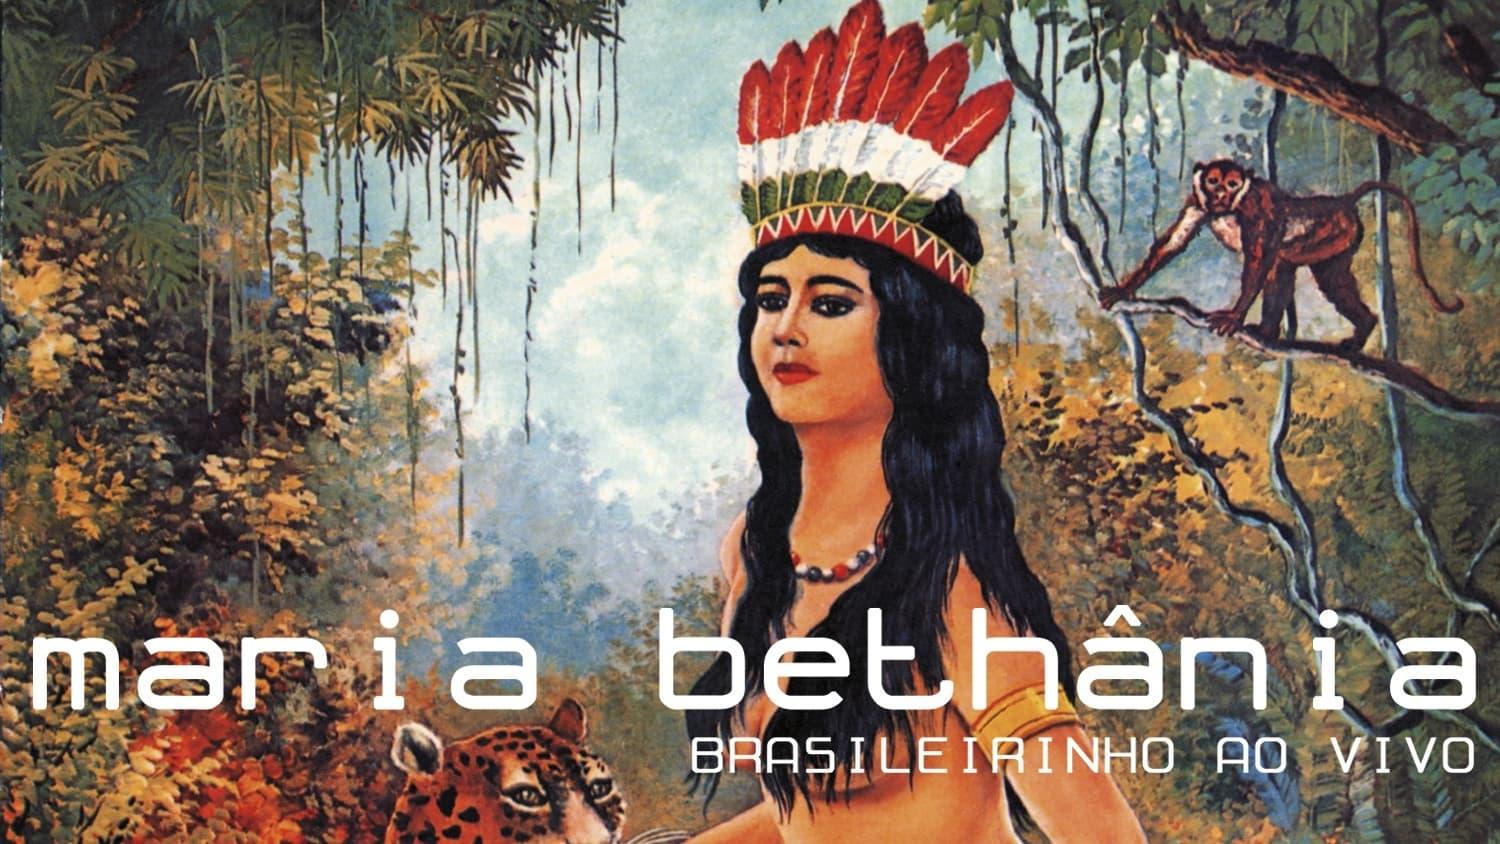 Maria Bethânia: Brasileirinho Ao Vivo backdrop